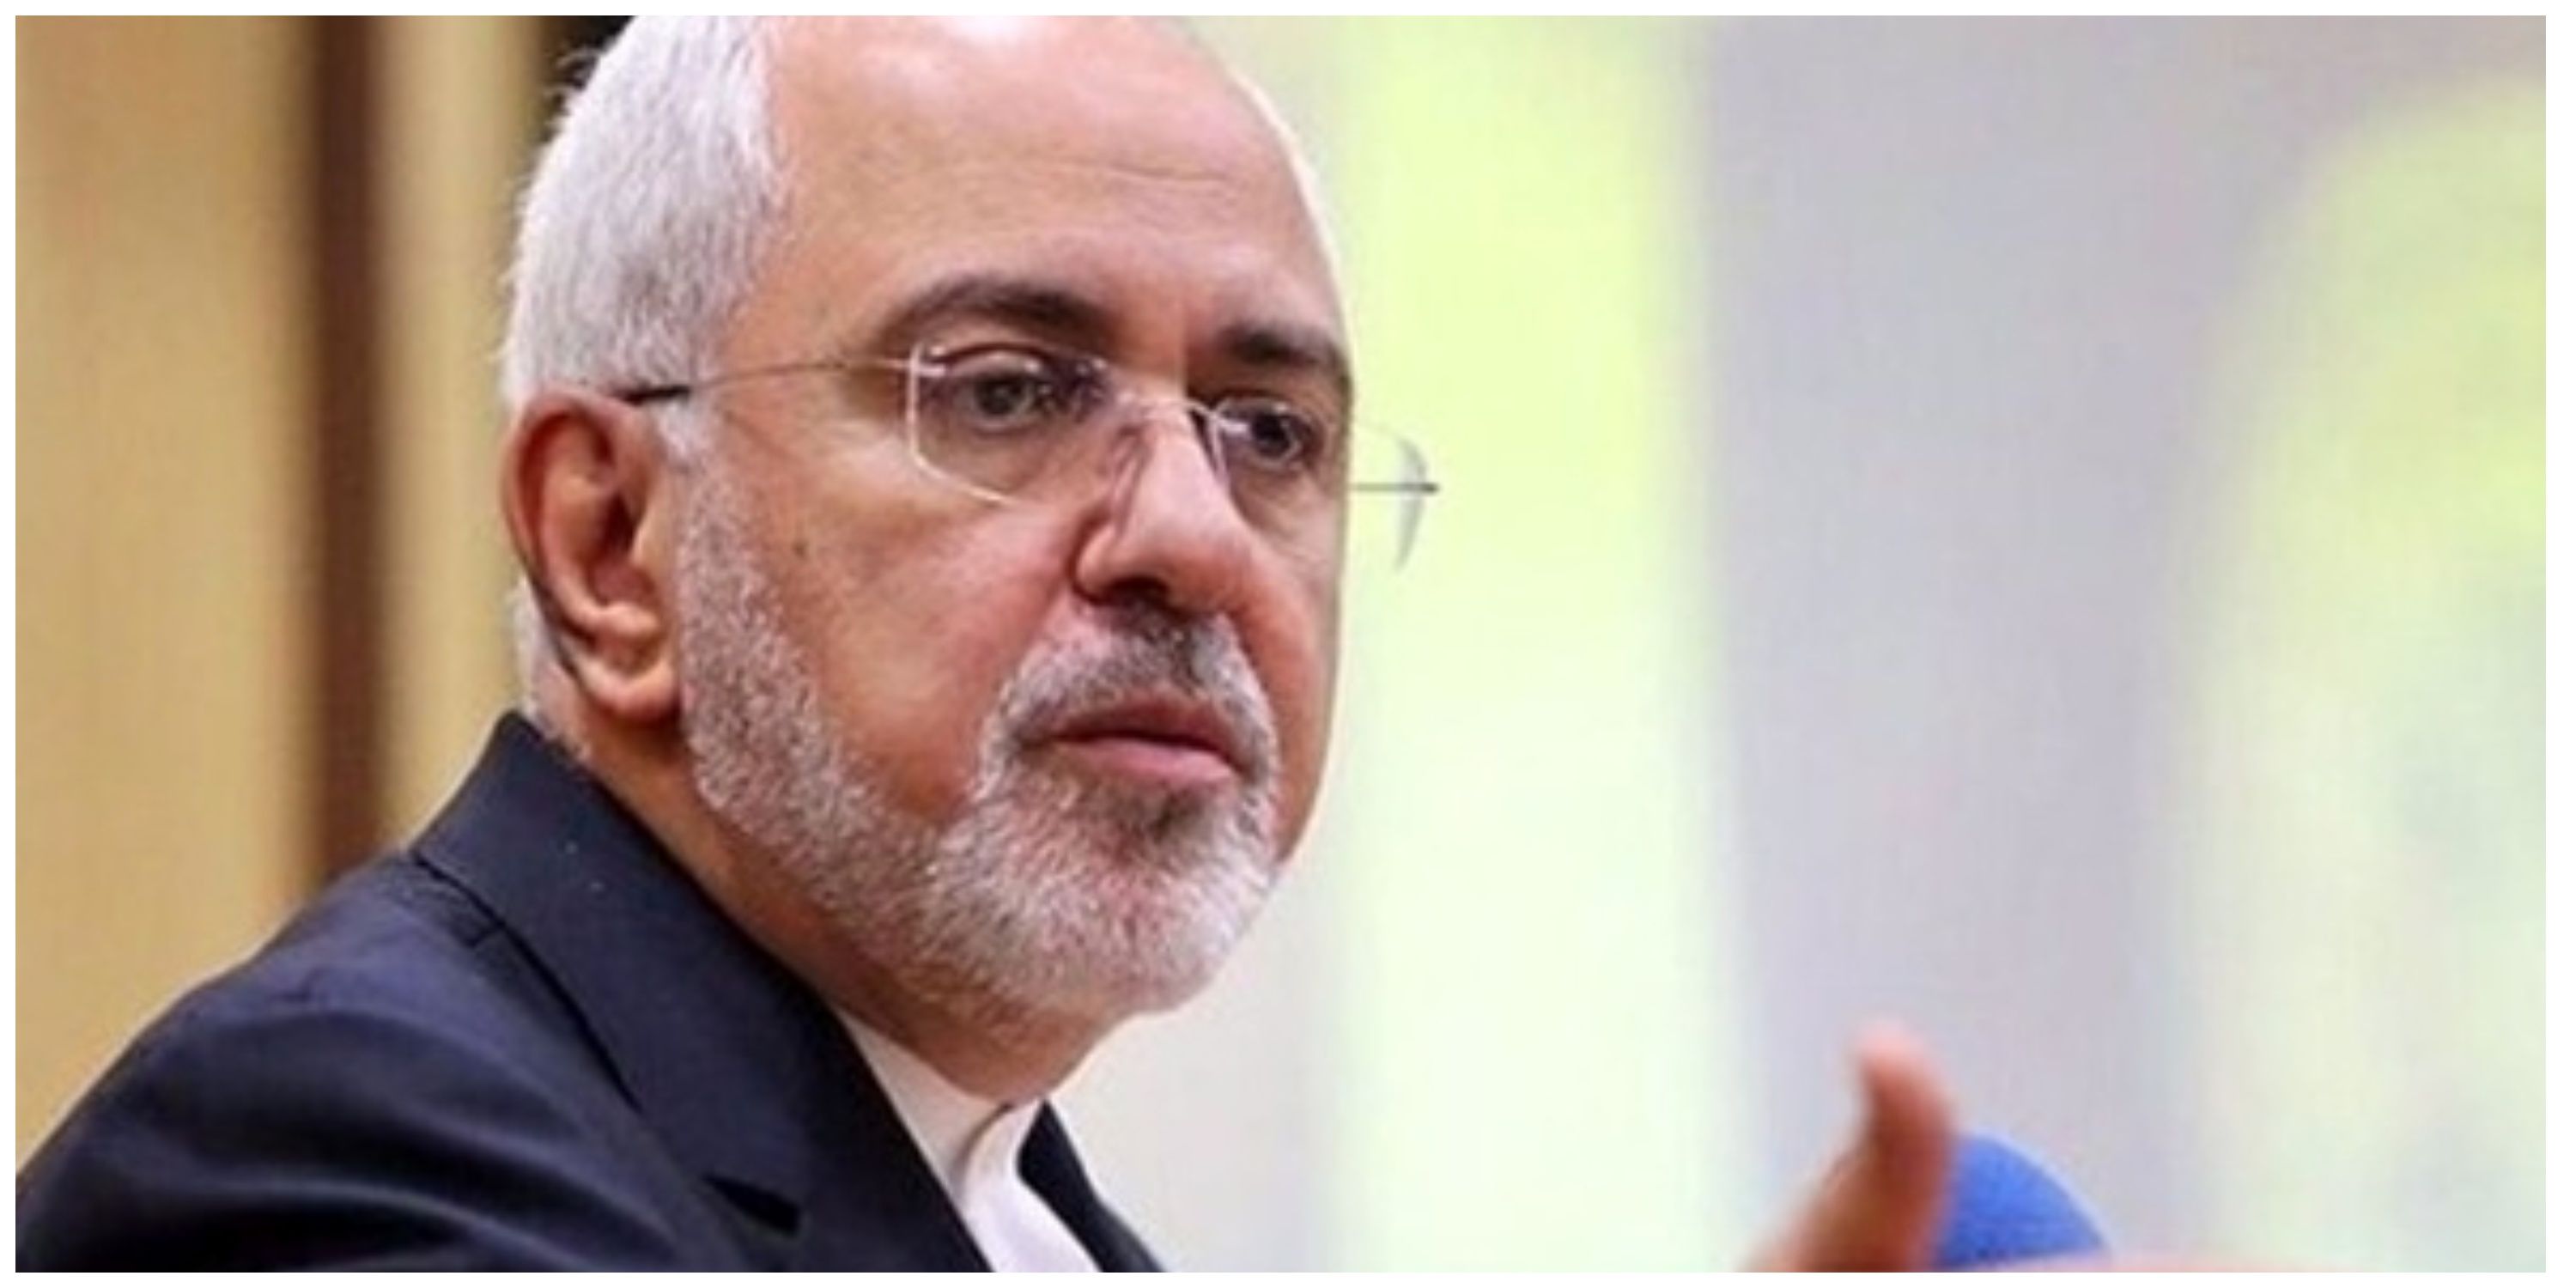 پیام تسلیت ظریف در پی شهادت وزیر امور خارجه کشورمان + عکس